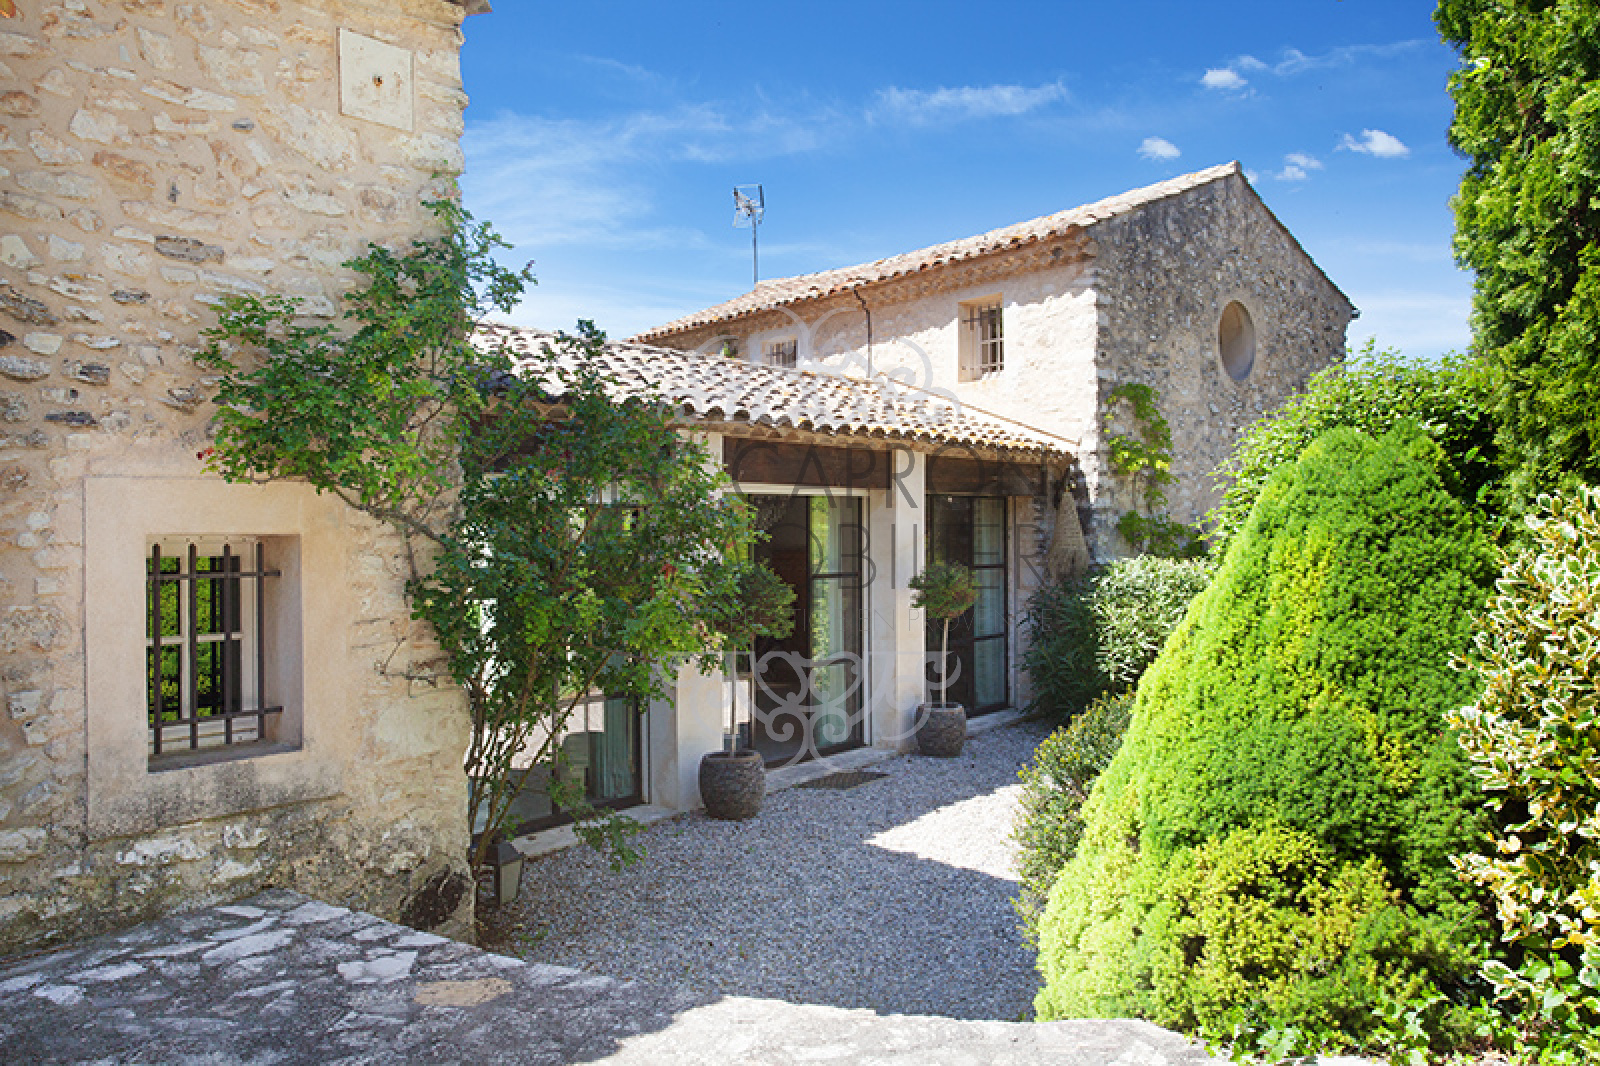 Image_3, Maisons (maison, propriÃ©tÃ©, villa, Mas,bastide, maison de village), Aix-en-Provence, ref :948 VM